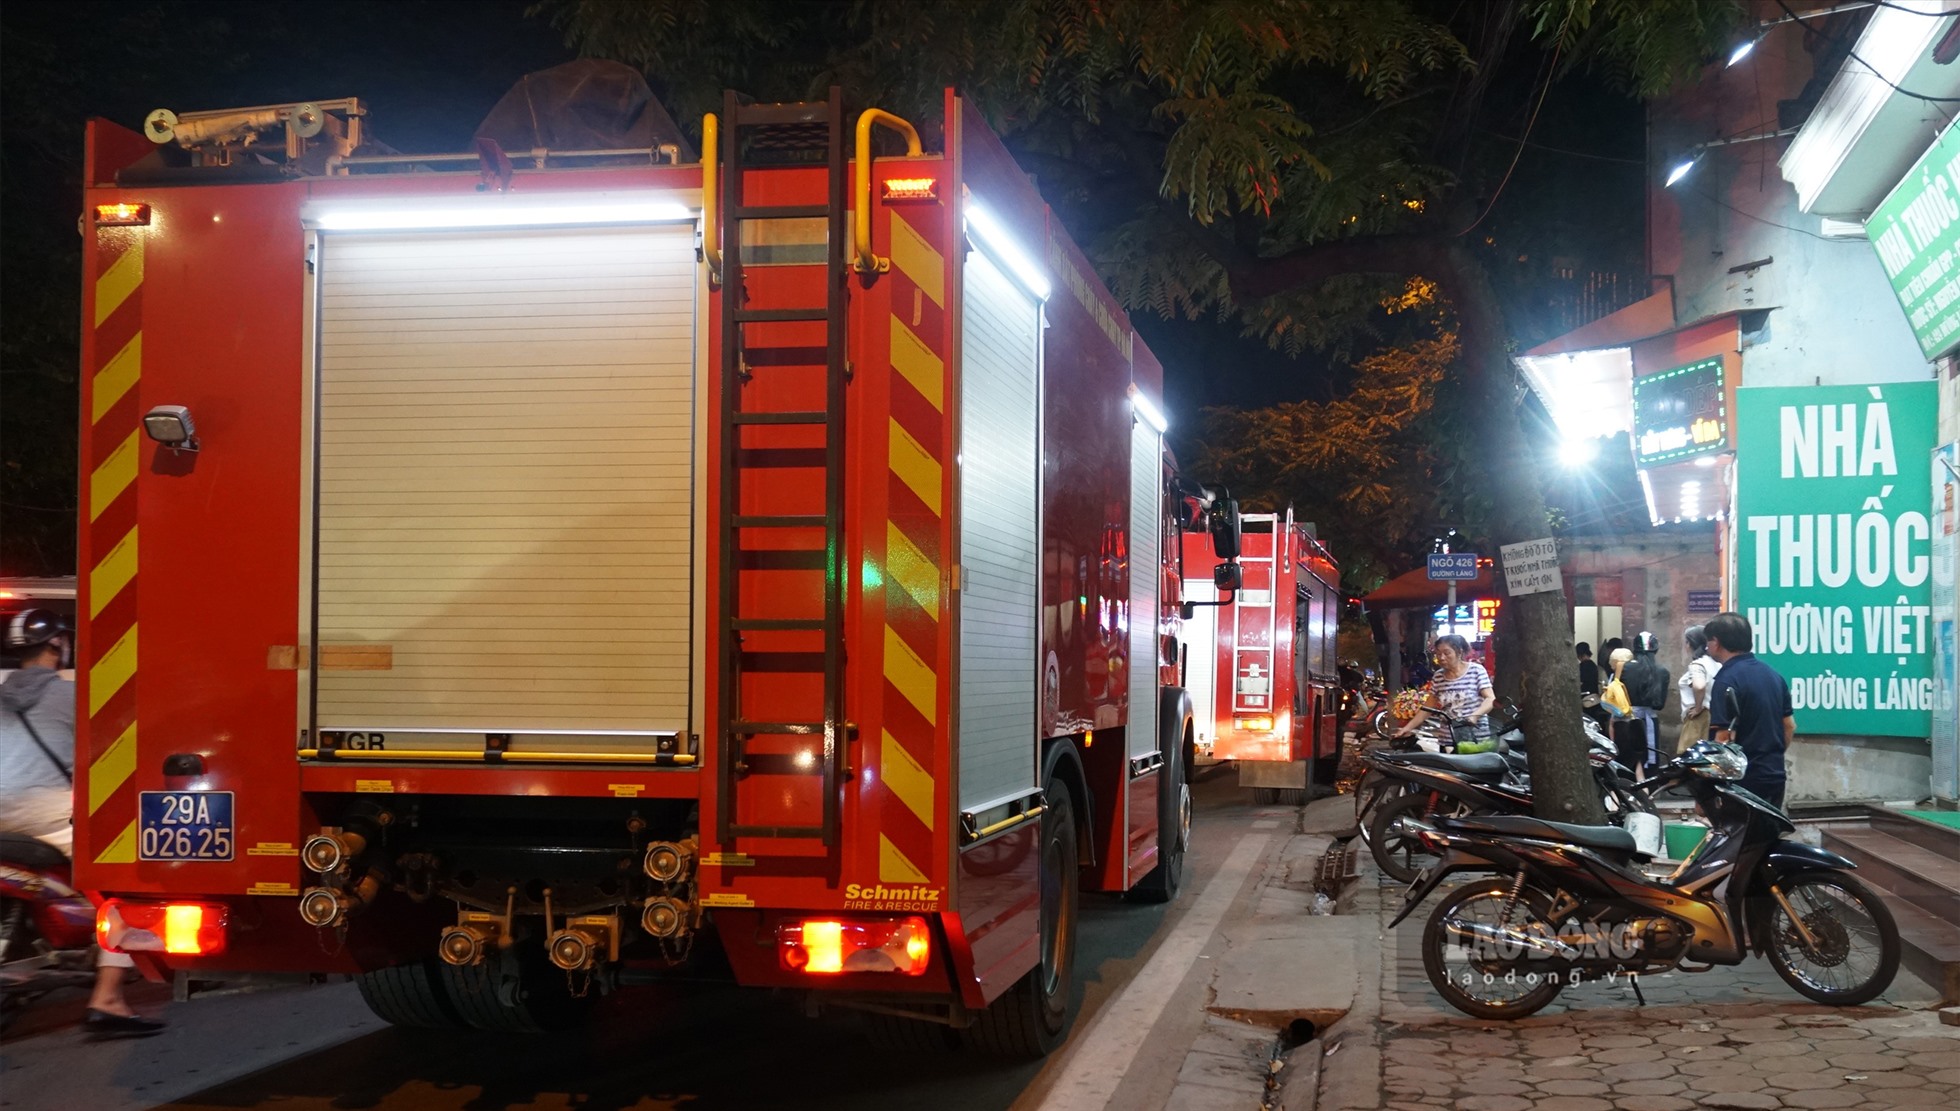 Lực lượng Cảnh sát Phòng cháy chữa cháy và Cứu nạn cứu hộ (PCCC&CNCH) Công an quận Đống Đa nhanh chóng điều động xe chữa cháy tới hiện trường.